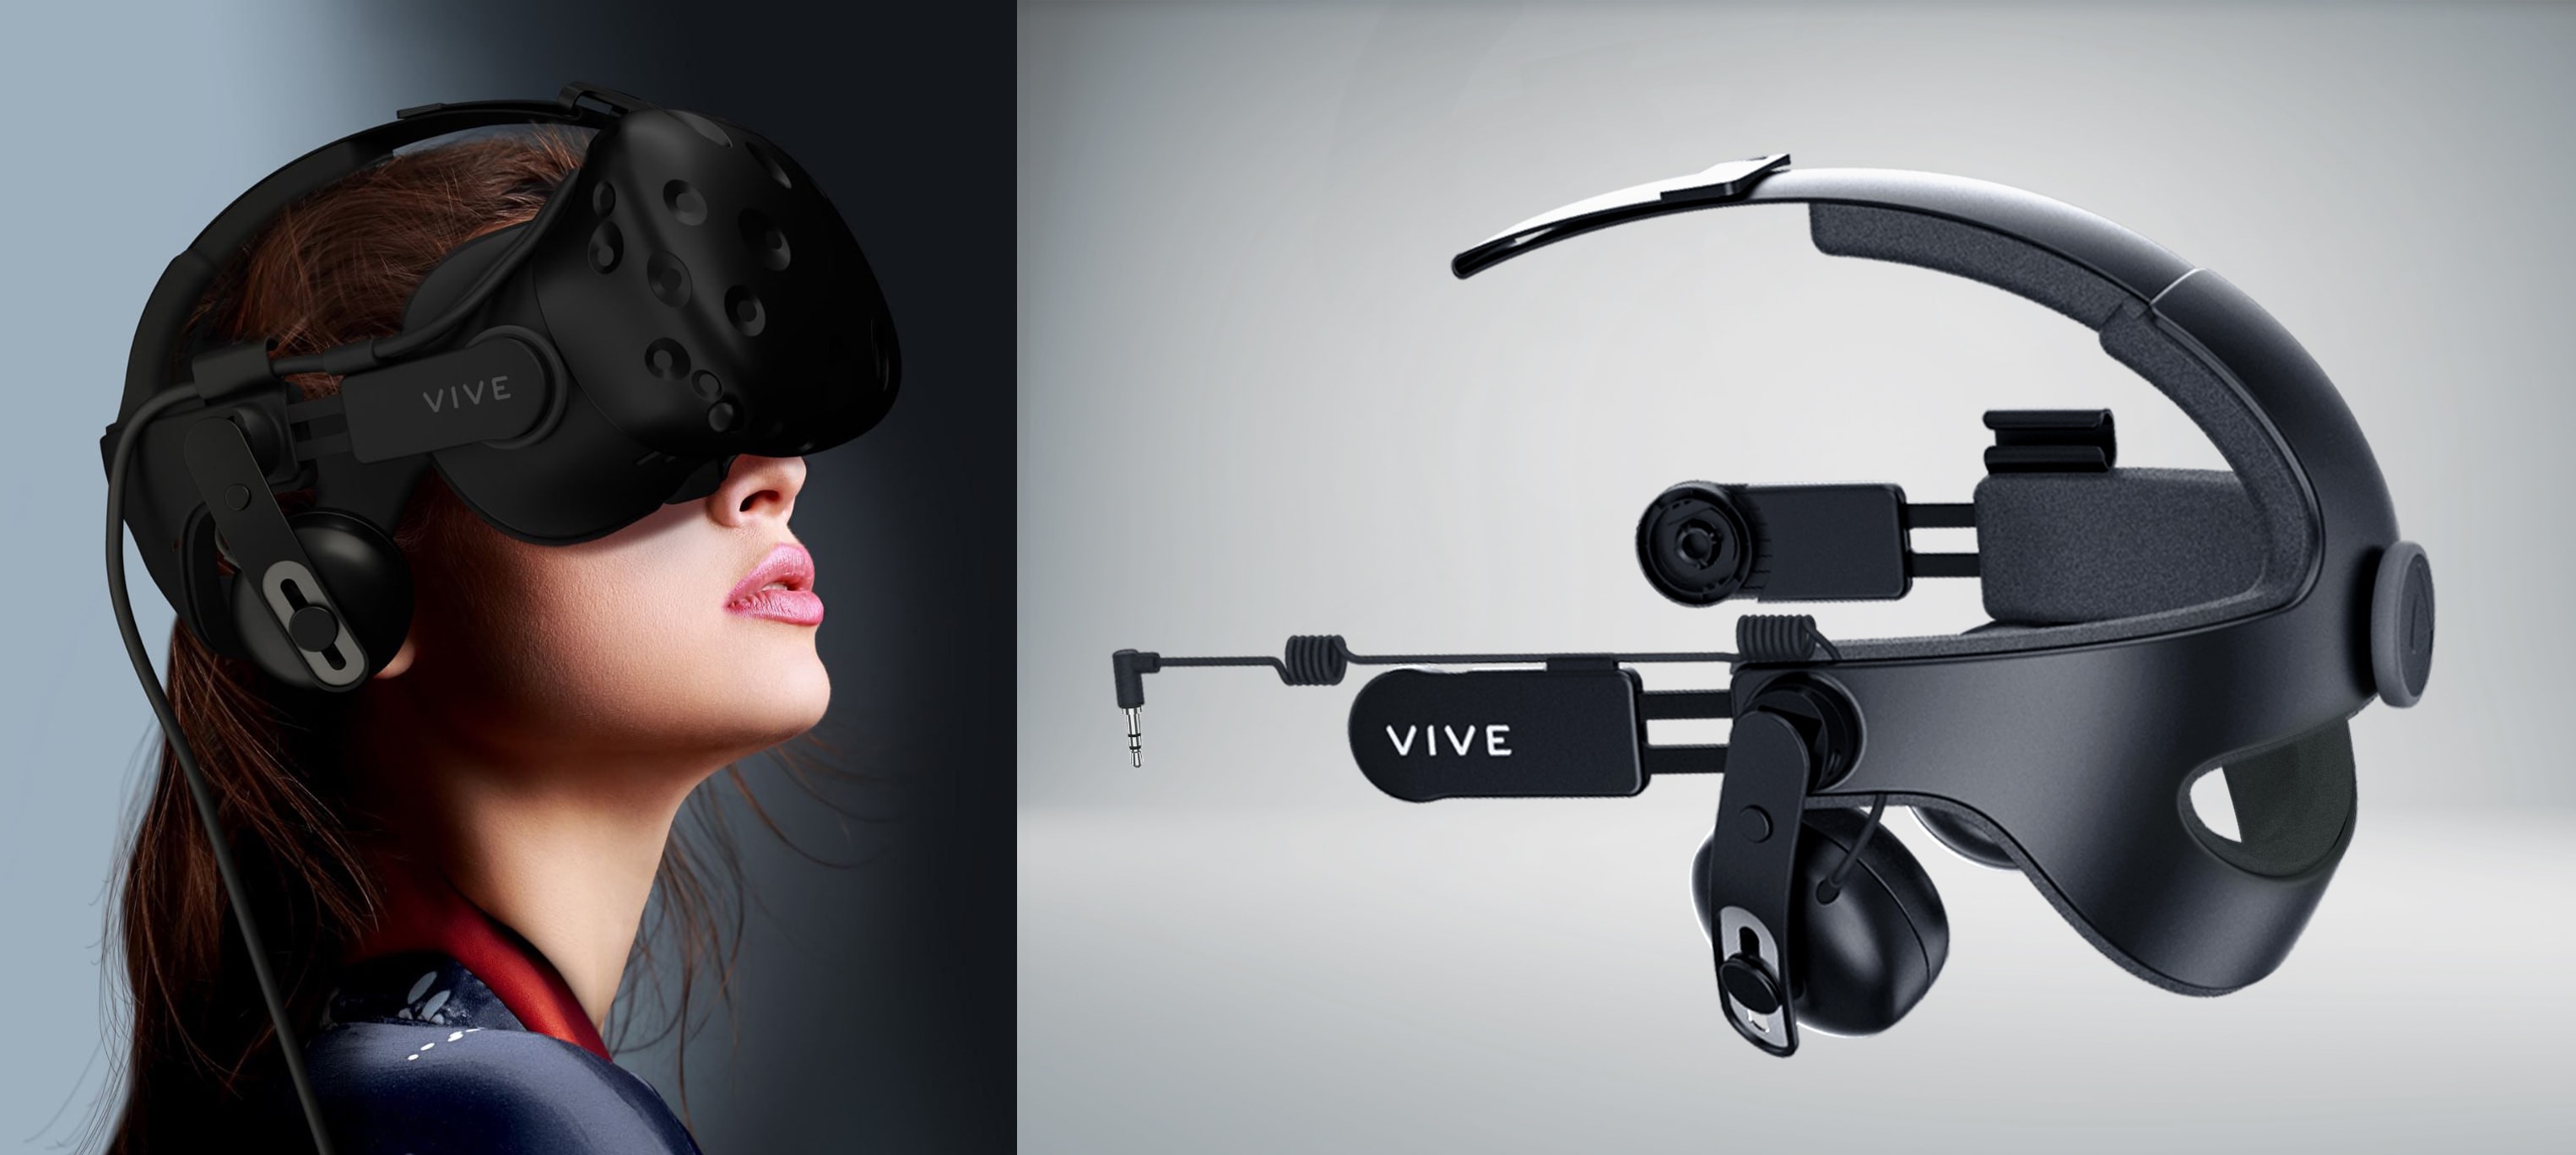 VIVE Deluxe Audio Strap VR accessory.